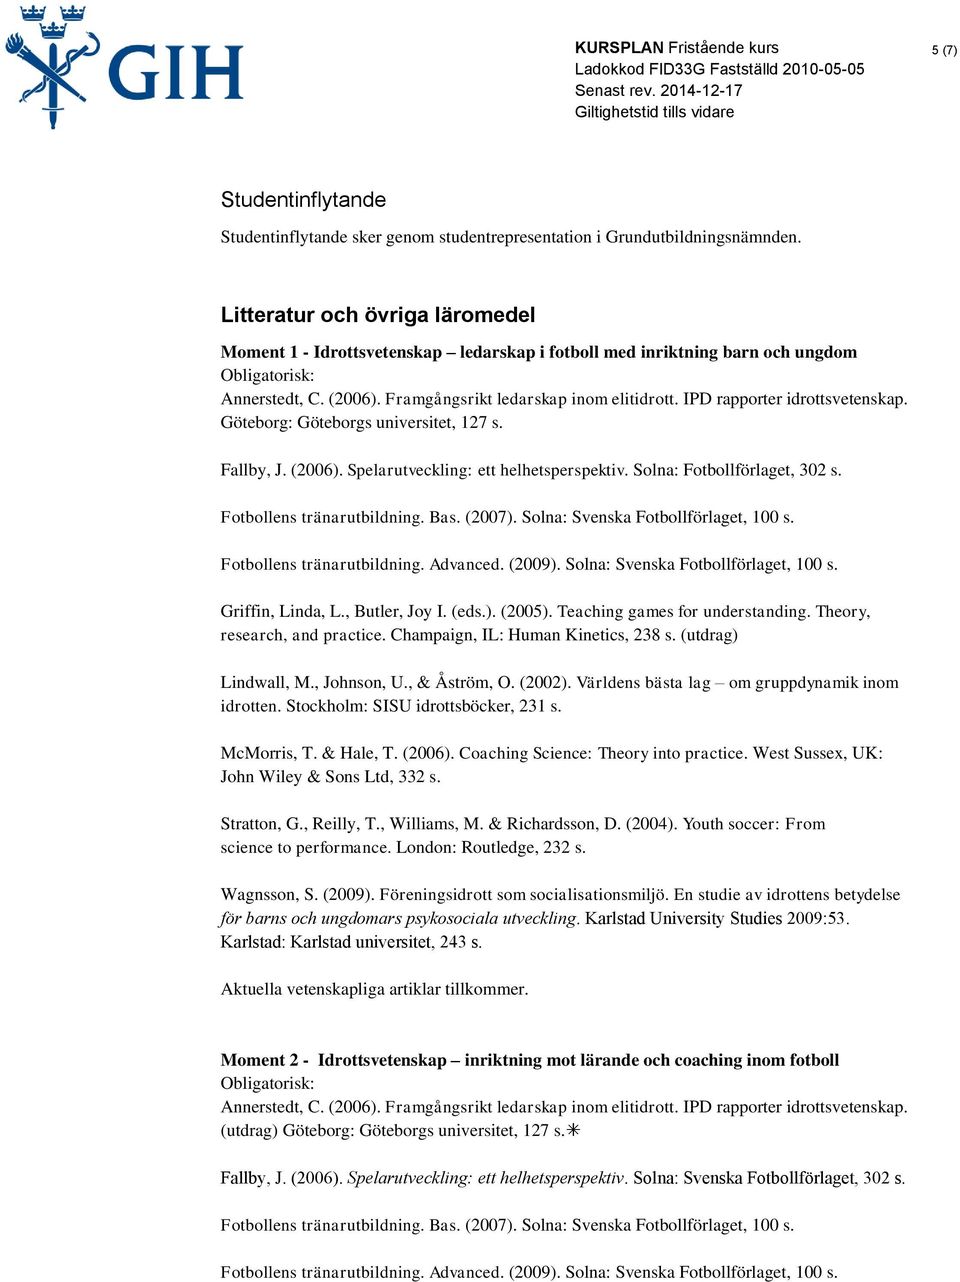 IPD rapporter idrottsvetenskap. Göteborg: Göteborgs universitet, 127 s. Fallby, J. (2006). Spelarutveckling: ett helhetsperspektiv. Solna: Fotbollförlaget, 302 s. Fotbollens tränarutbildning. Bas.